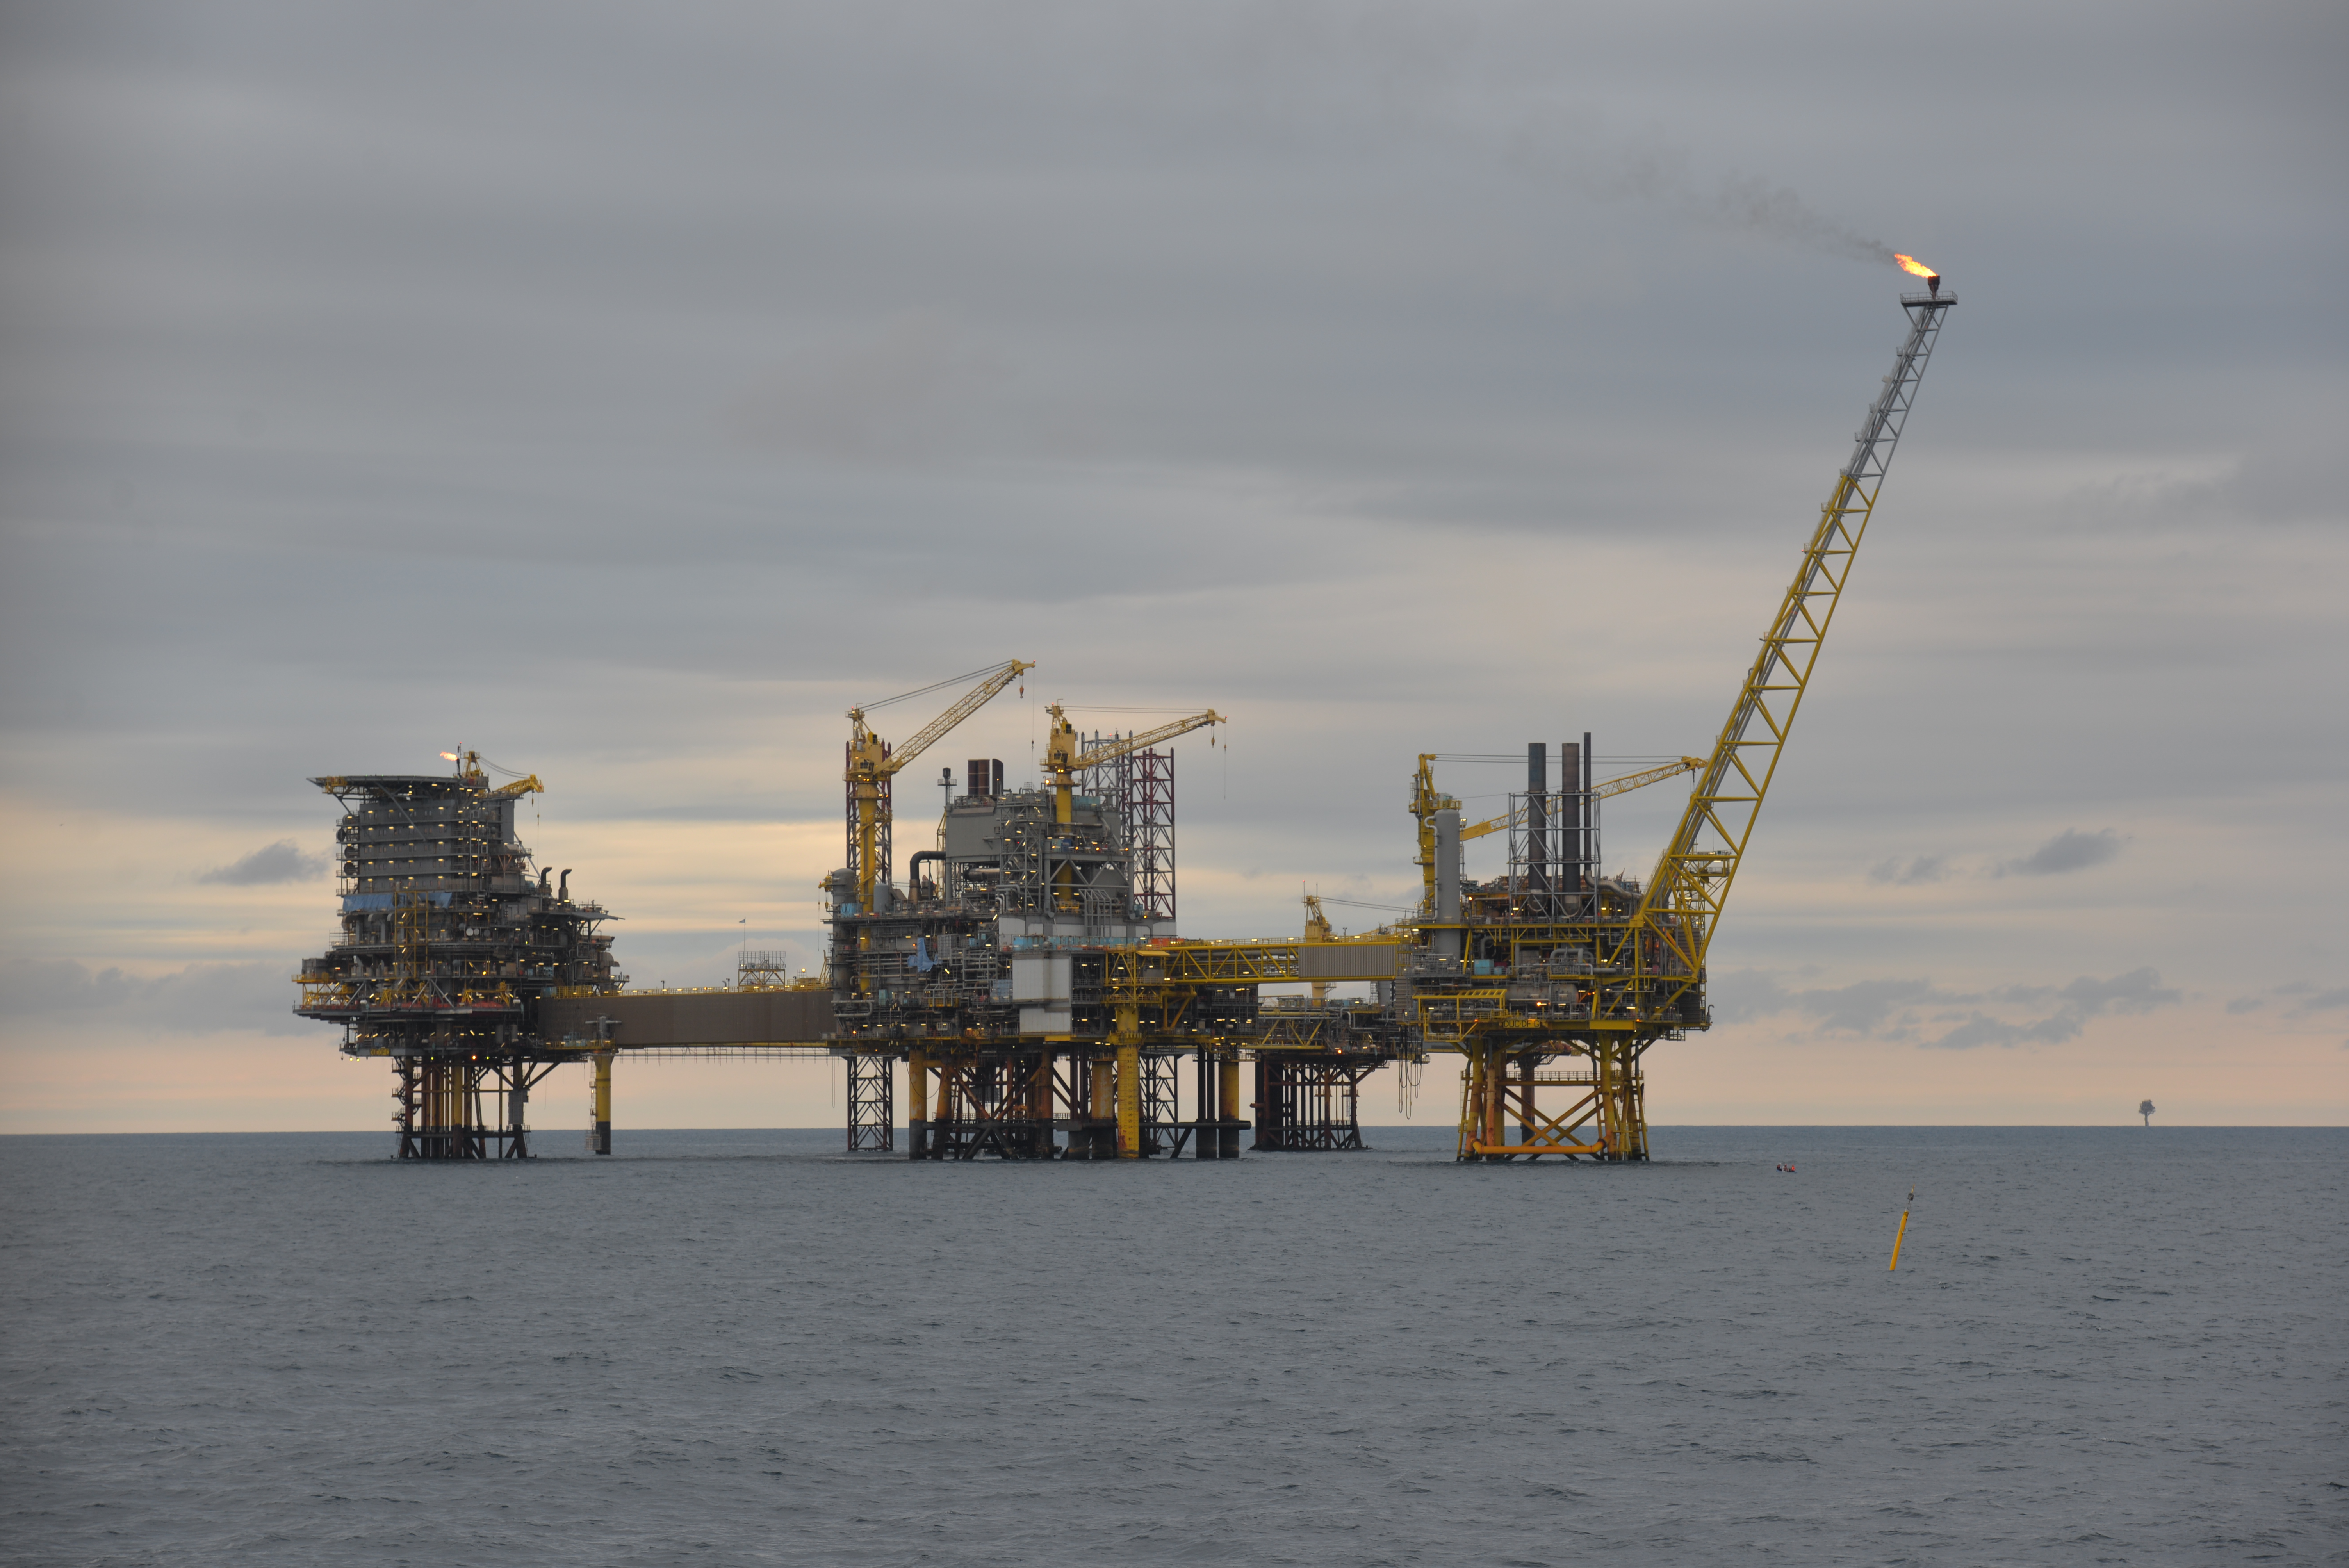 Studieområdet med olie- og gasplatformen Dan-F i den Danske sektor af Nordsøen. Til højre i billedet anes den lille servicebåd. Den gule bøje i forgrunden angiver, hvor lytteudstyret var udlagt ved bunden gennem to år for at lytte til marsvins lyde og stø